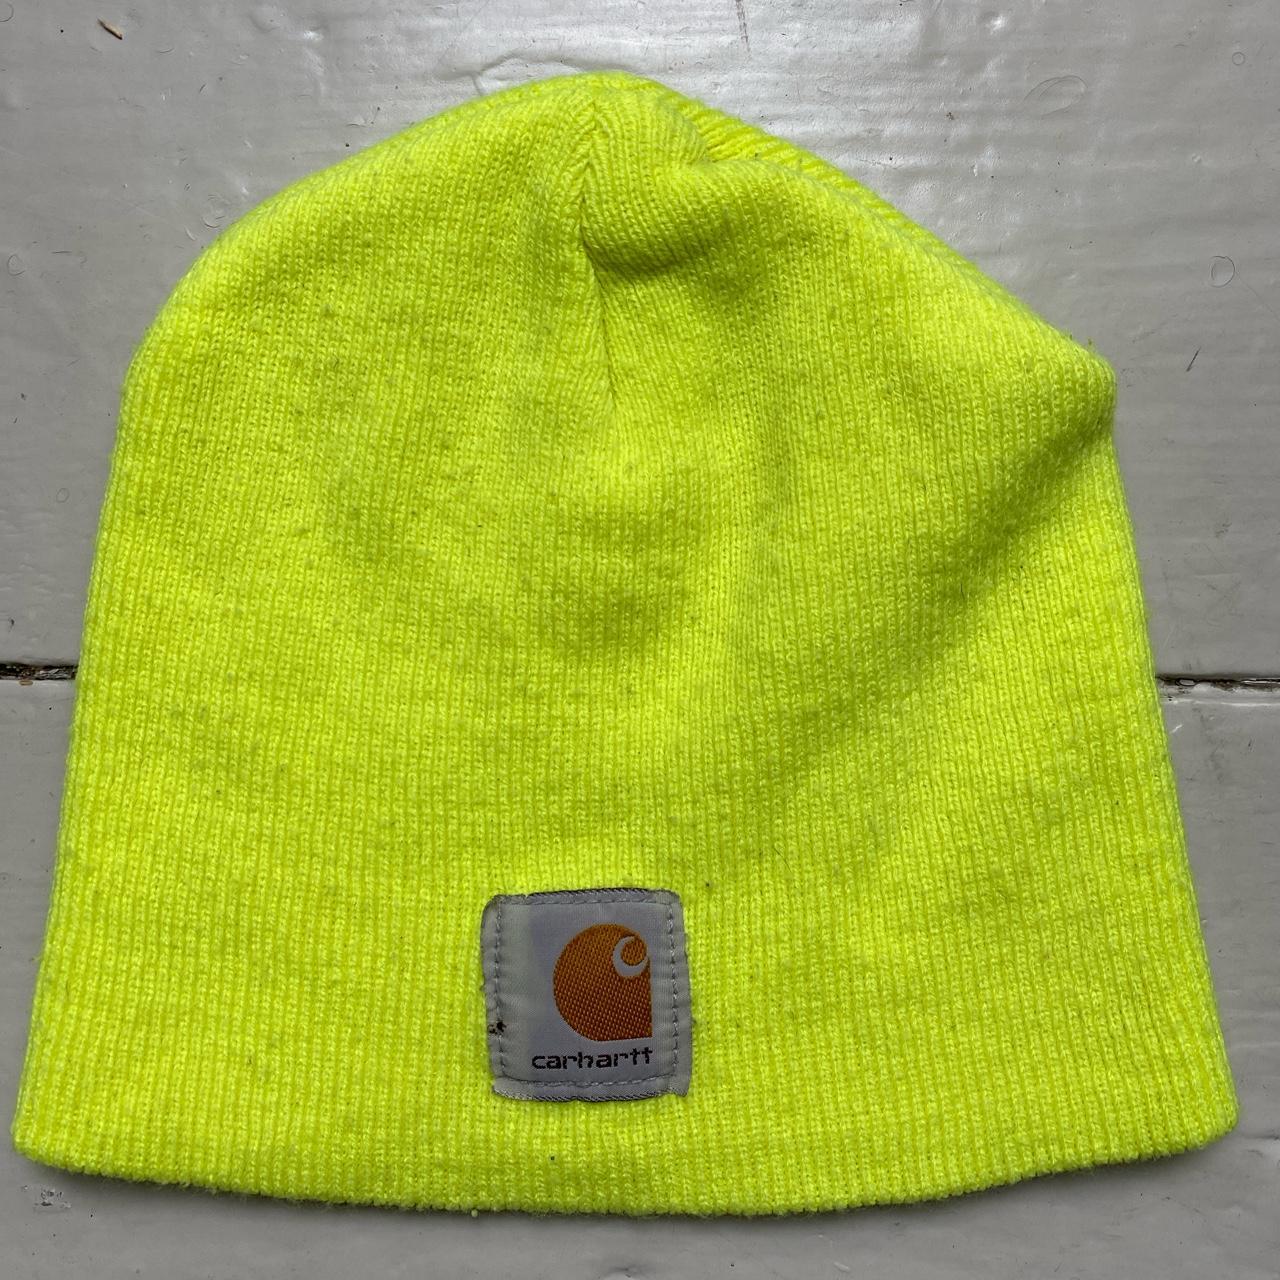 Carharrt Neon Yellow Beanie Hat